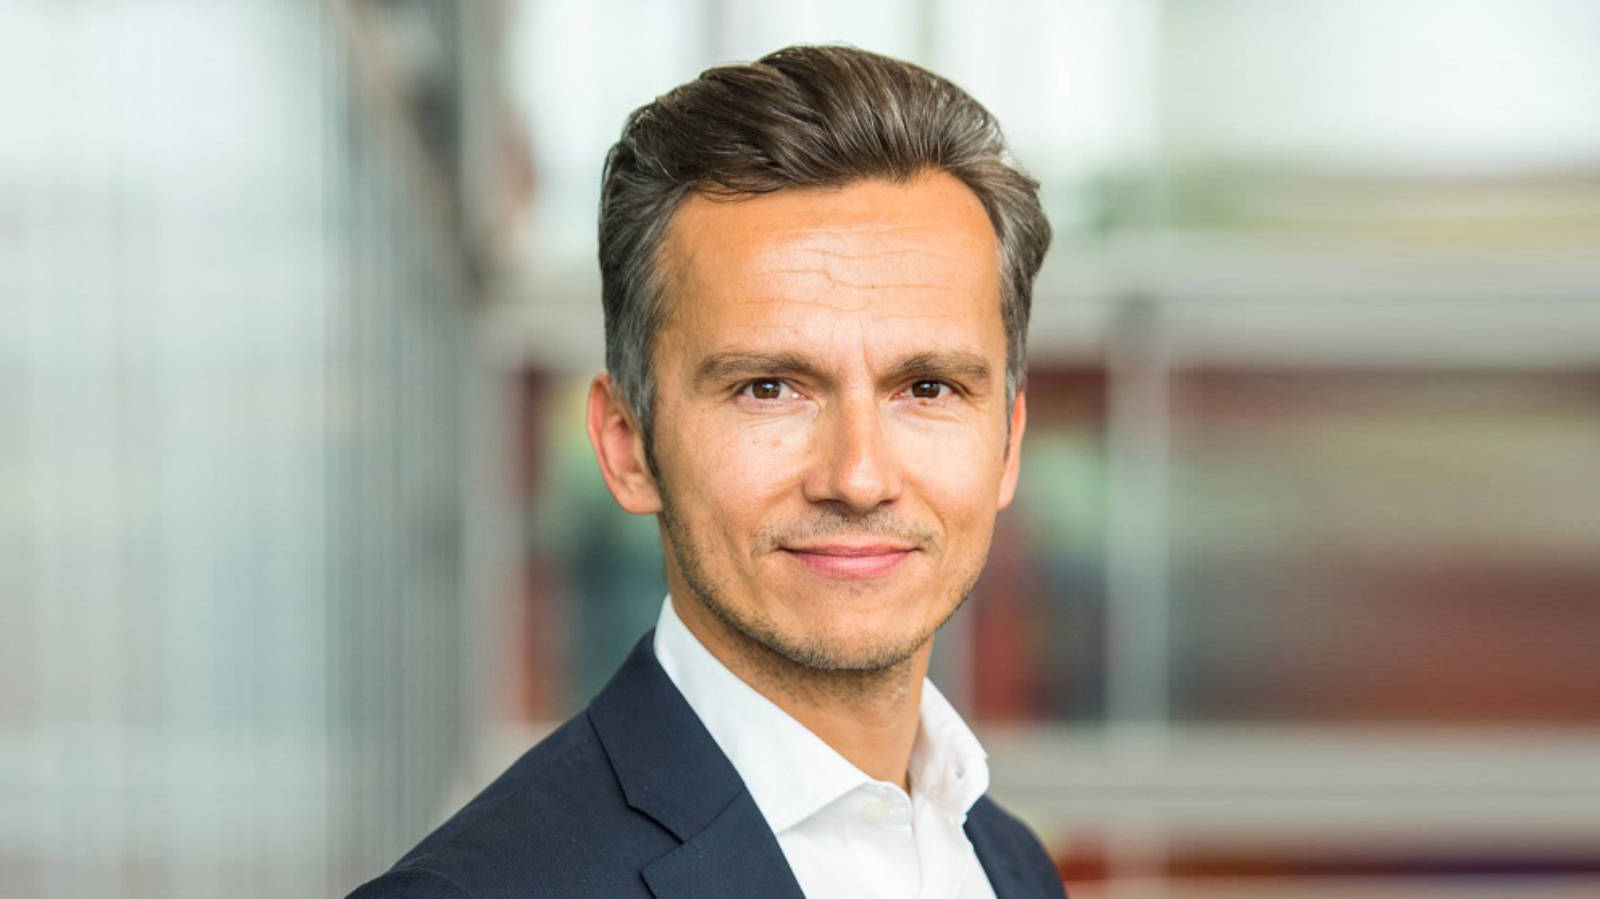 Mondelēz International z nowym Dyrektorem Zarządzającym na Polskę i Kraje Bałtyckie Nestle mediarun Marcin Dobrock Dyrektor Zarzadzający Milka 2019